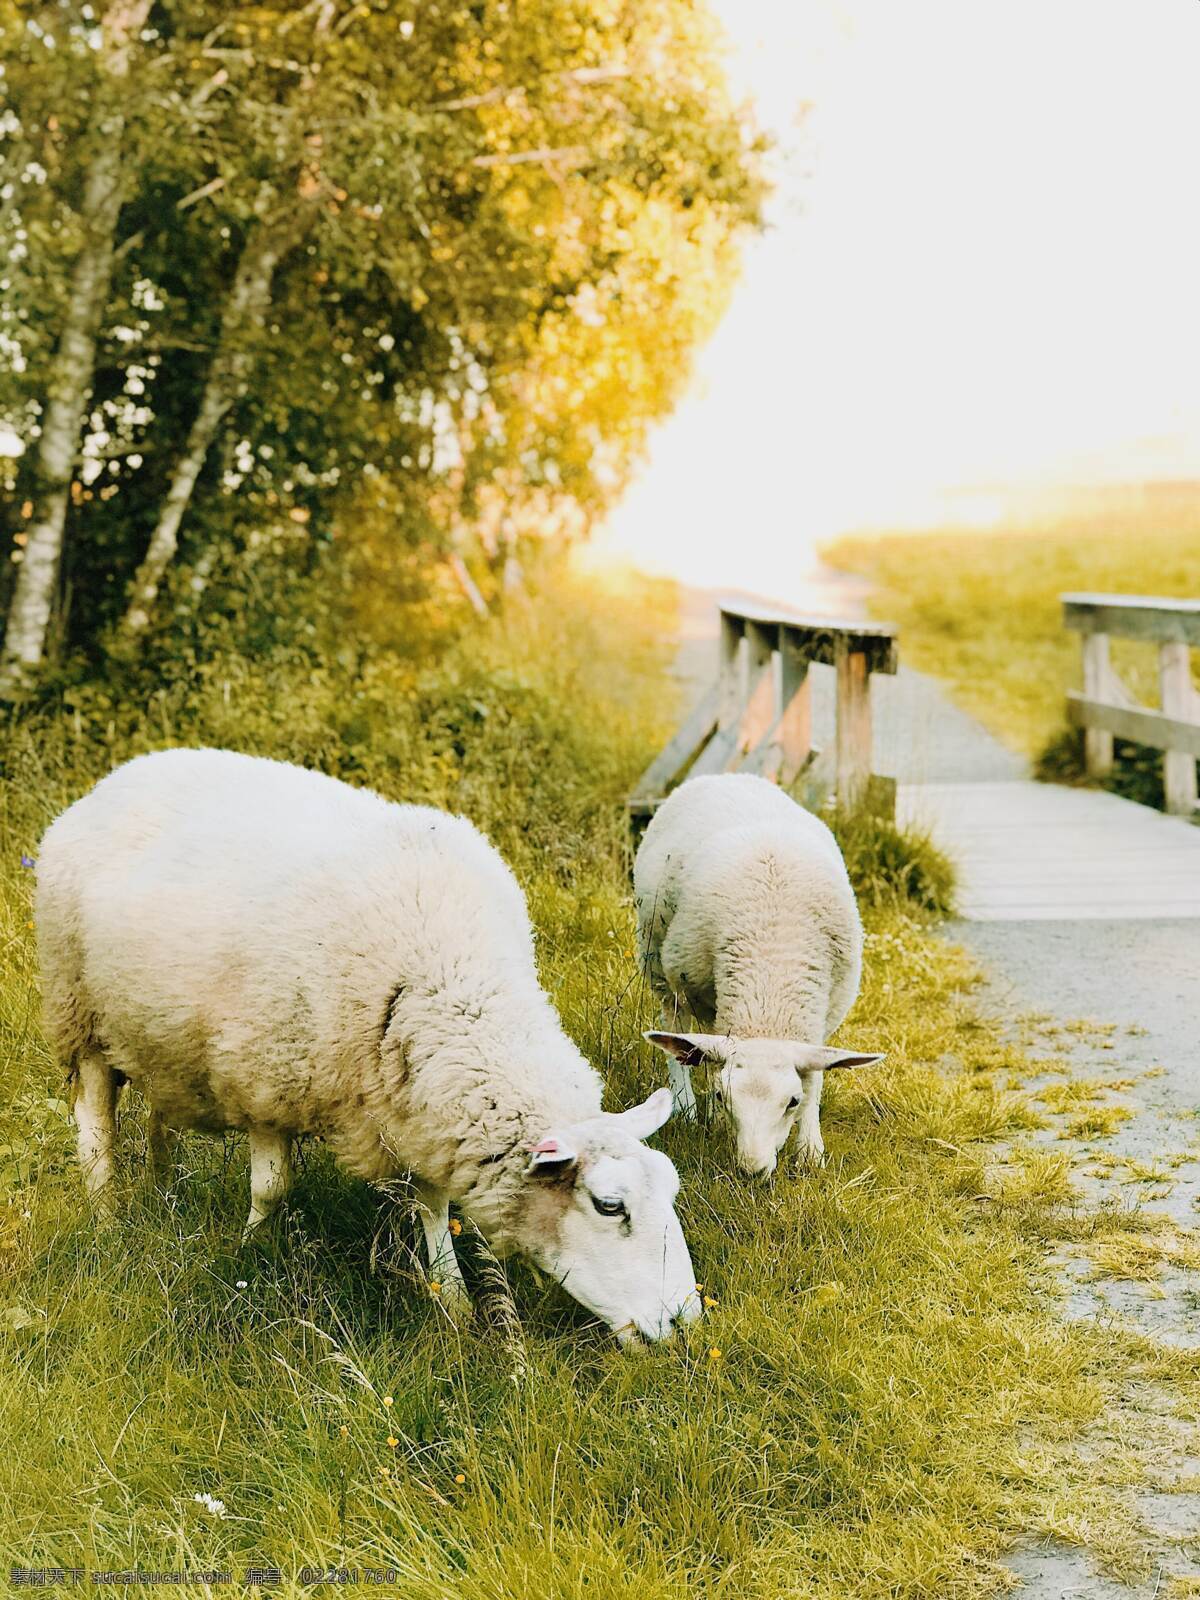 羊养殖 羔羊 羊毛 牧场 农业 羊群 动物 羊皮 一群 毛皮 羊群的羊 软毛 白羊 小羊 农场 家畜 绵羊 湖羊 羊摄影 羊抓拍 羊素材 羊壁纸 羊拍摄 草原 一只羊 一群羊 养羊 生物世界 家禽家畜